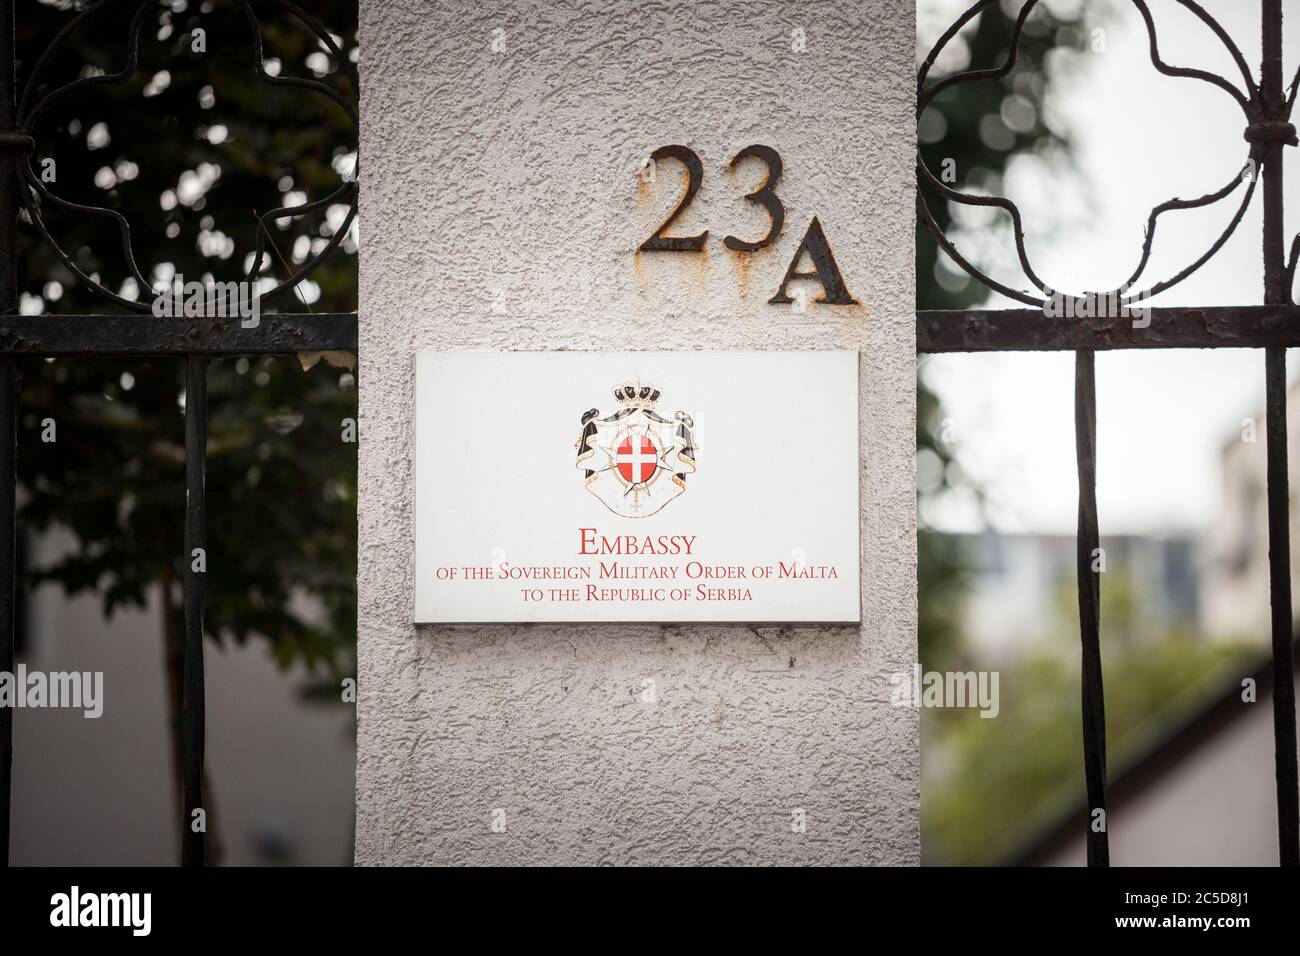 BELGRADO, SERBIA - 3 SETTEMBRE 2018: Cartello con l'indicazione dell'Ordine dell'Ambasciata di Malta a Belgrado. È la rappresentanza diplomatica ufficiale delle Sove Foto Stock